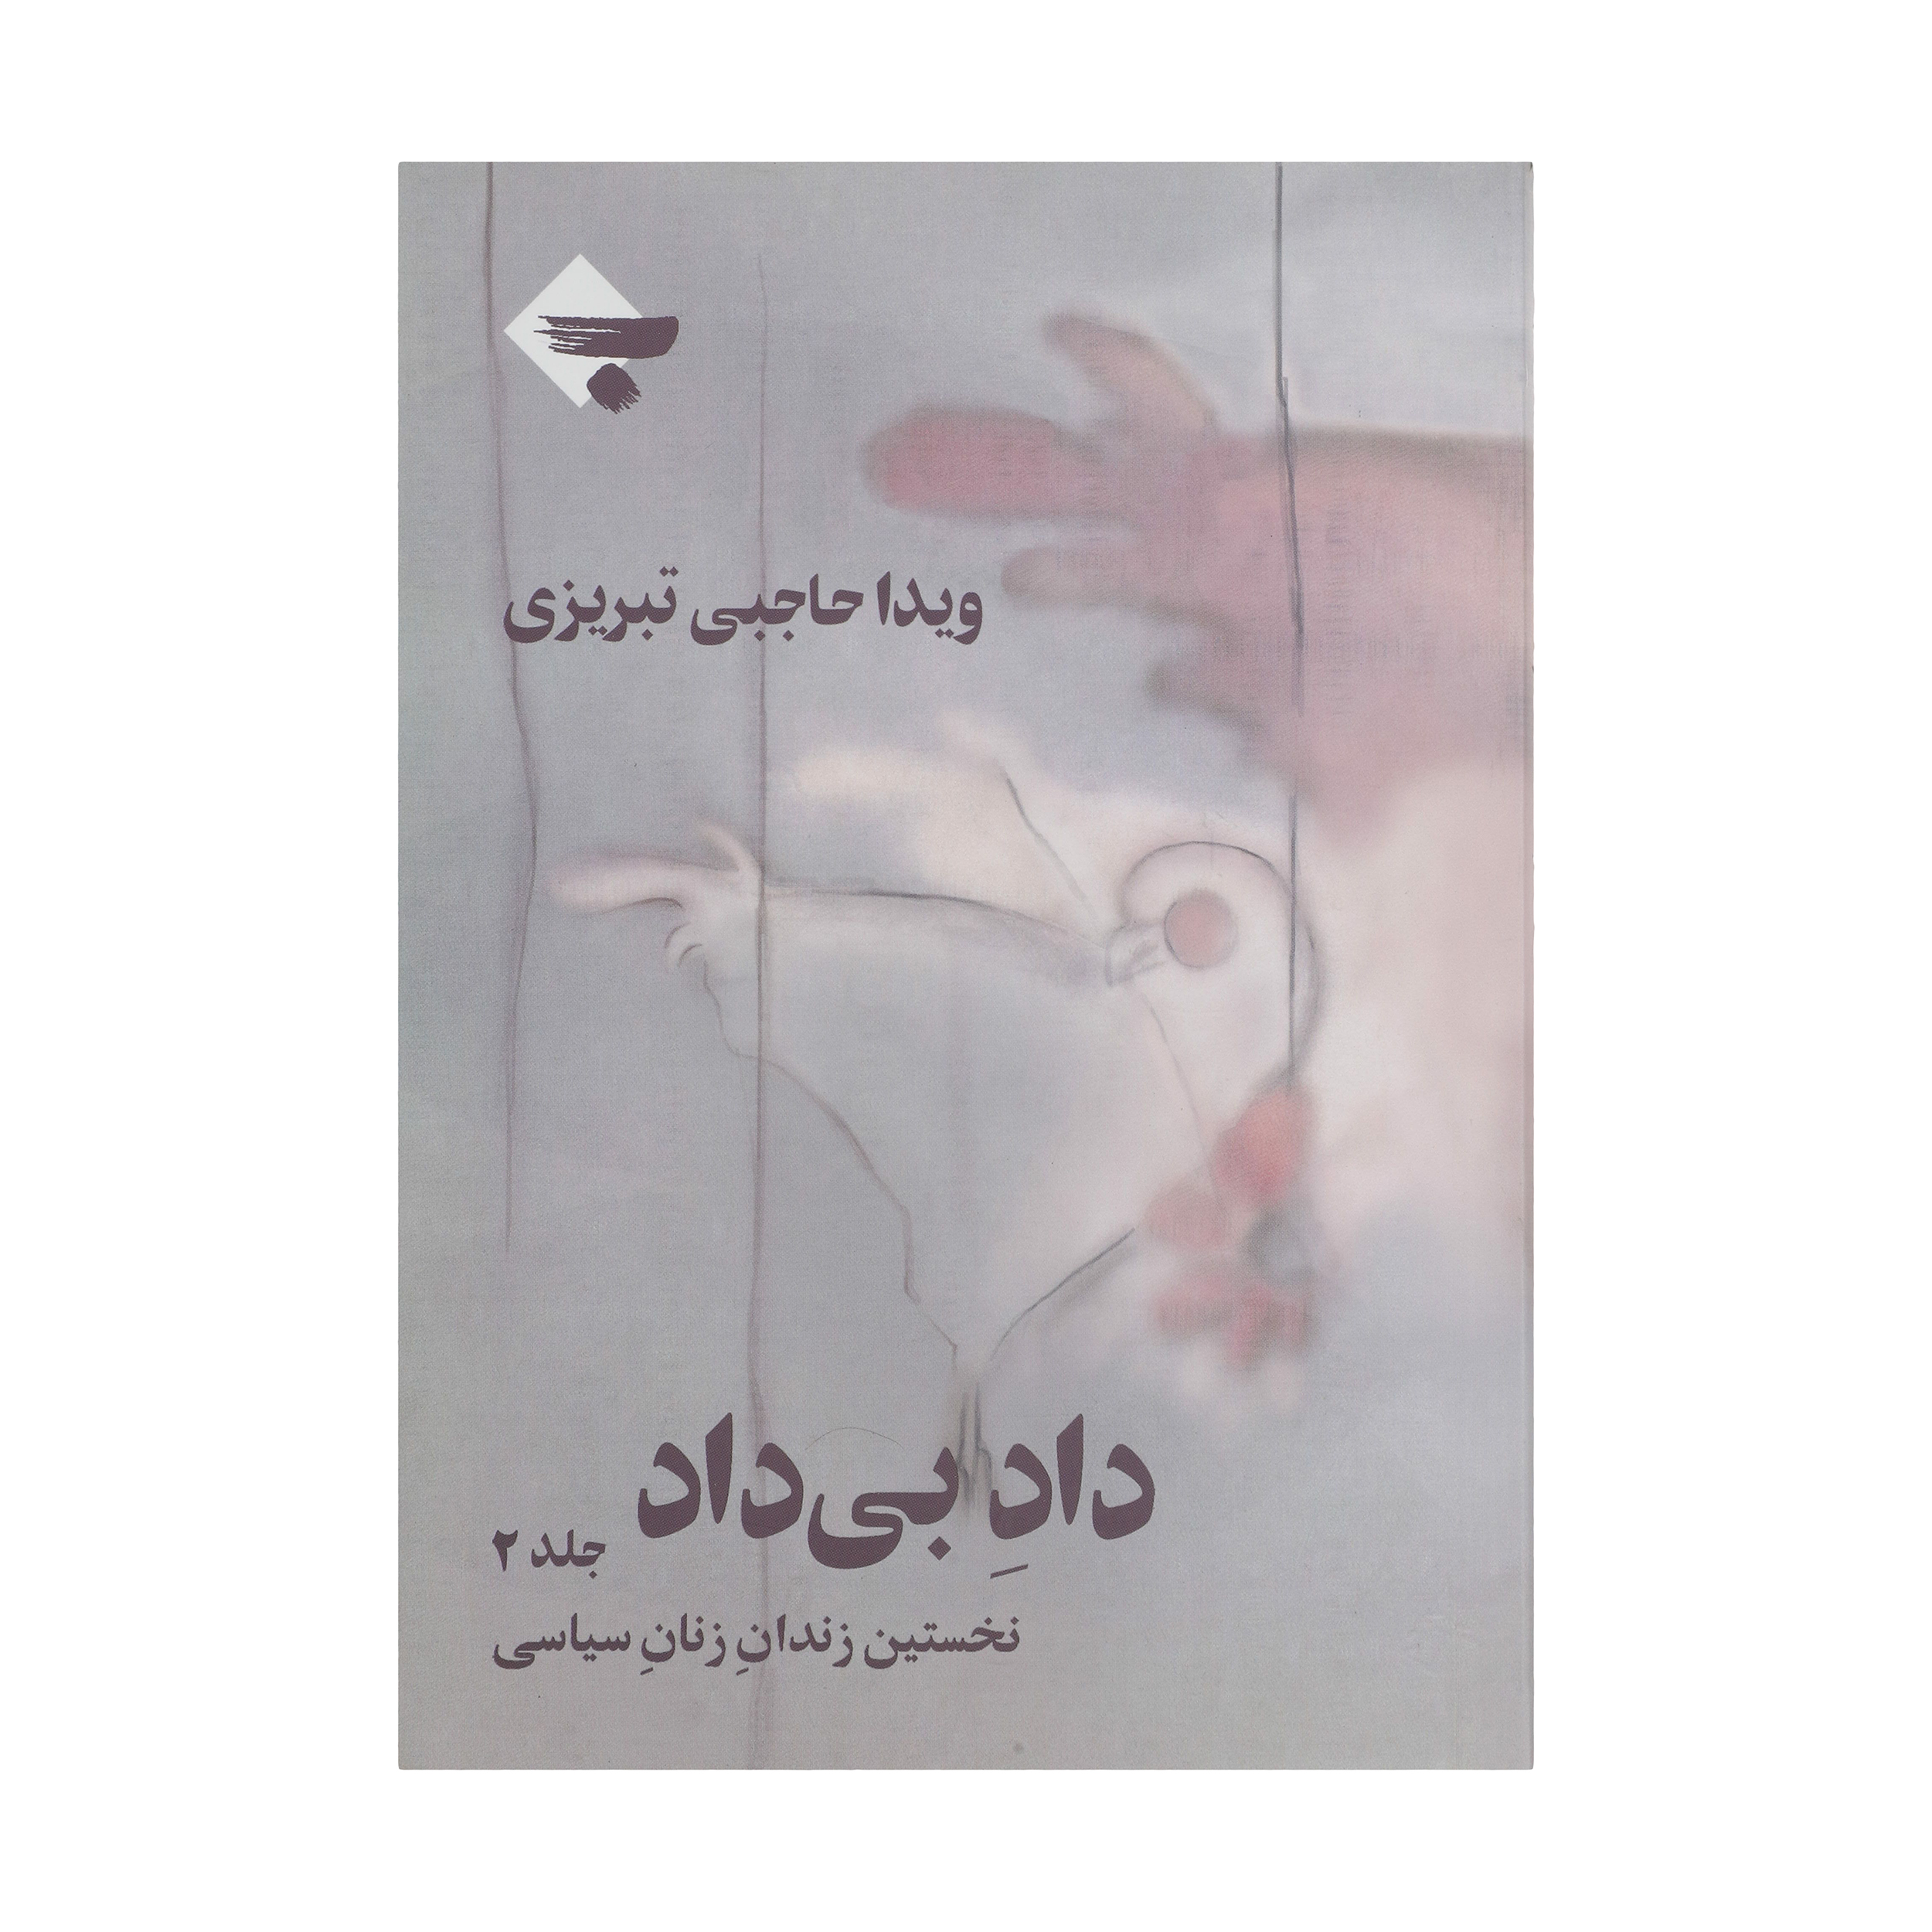 کتاب داد بی داد اثر ویدا حاجبی تبریزی انتشارات بازتاب نگار جلد 2